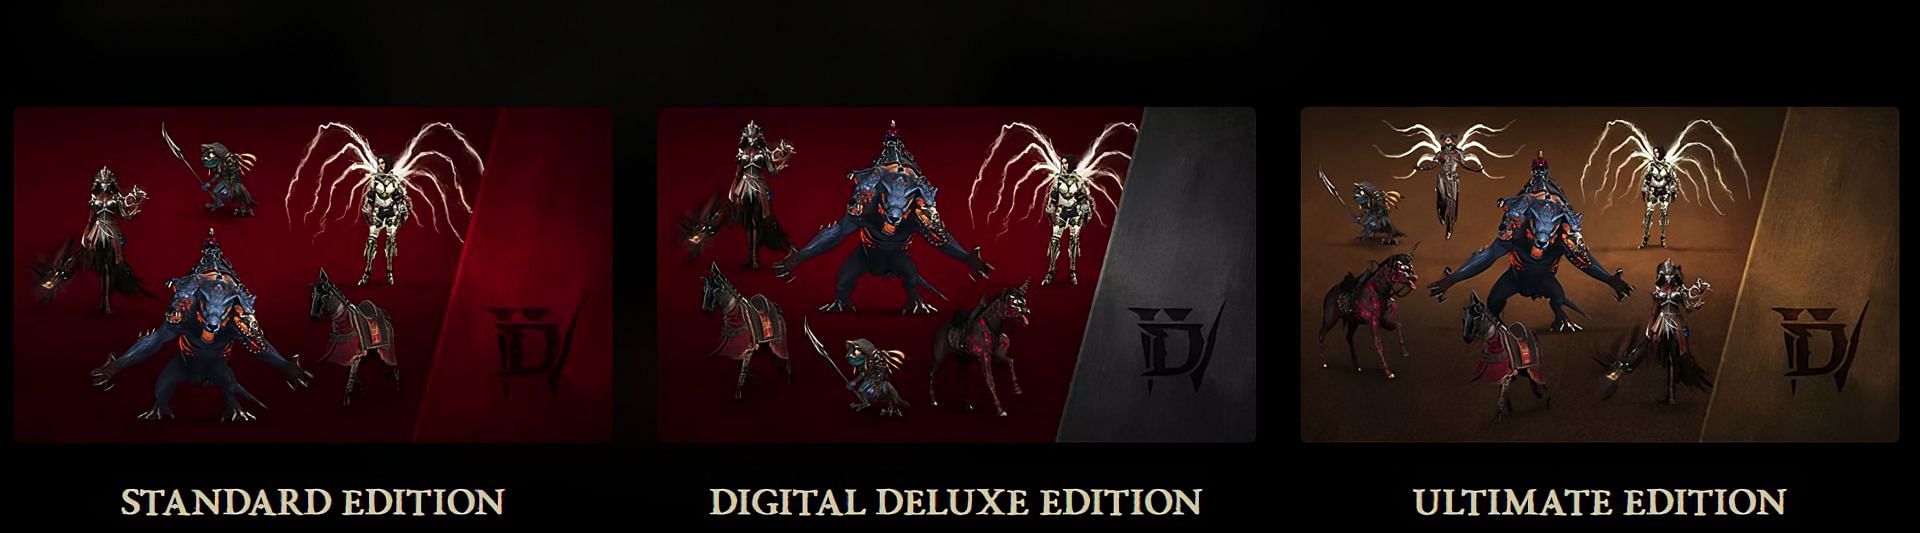 Diablo 4 editions (Image via Blizzard Entertainment)